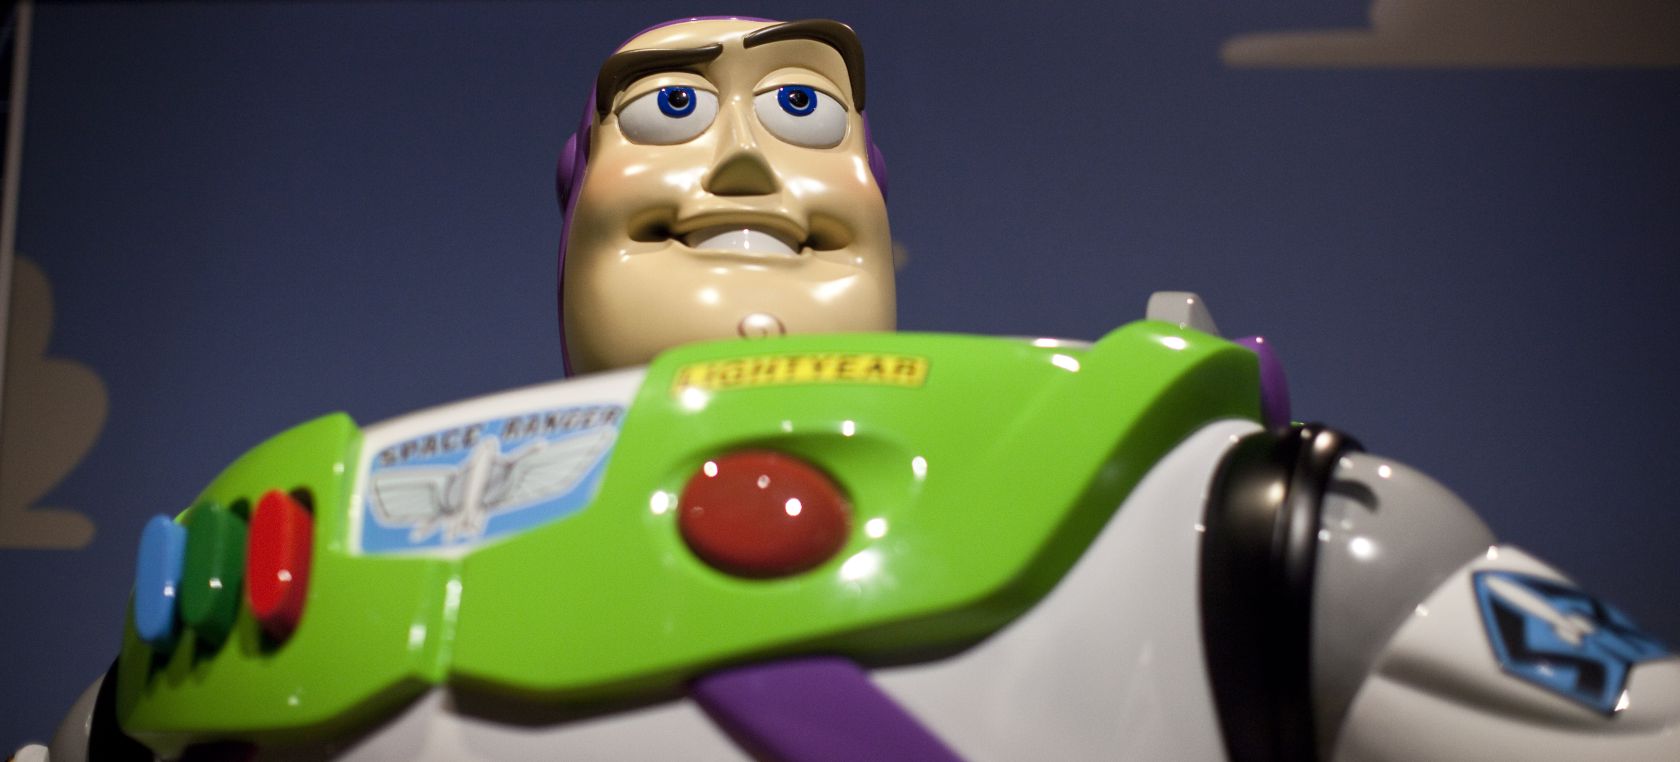 El actual ponerse en cuclillas carro Lightyear: Primer tráiler de 'Lightyear', la película sobre Buzz Lightyear  de Pixar para Disney | Cine y Televisión | LOS40